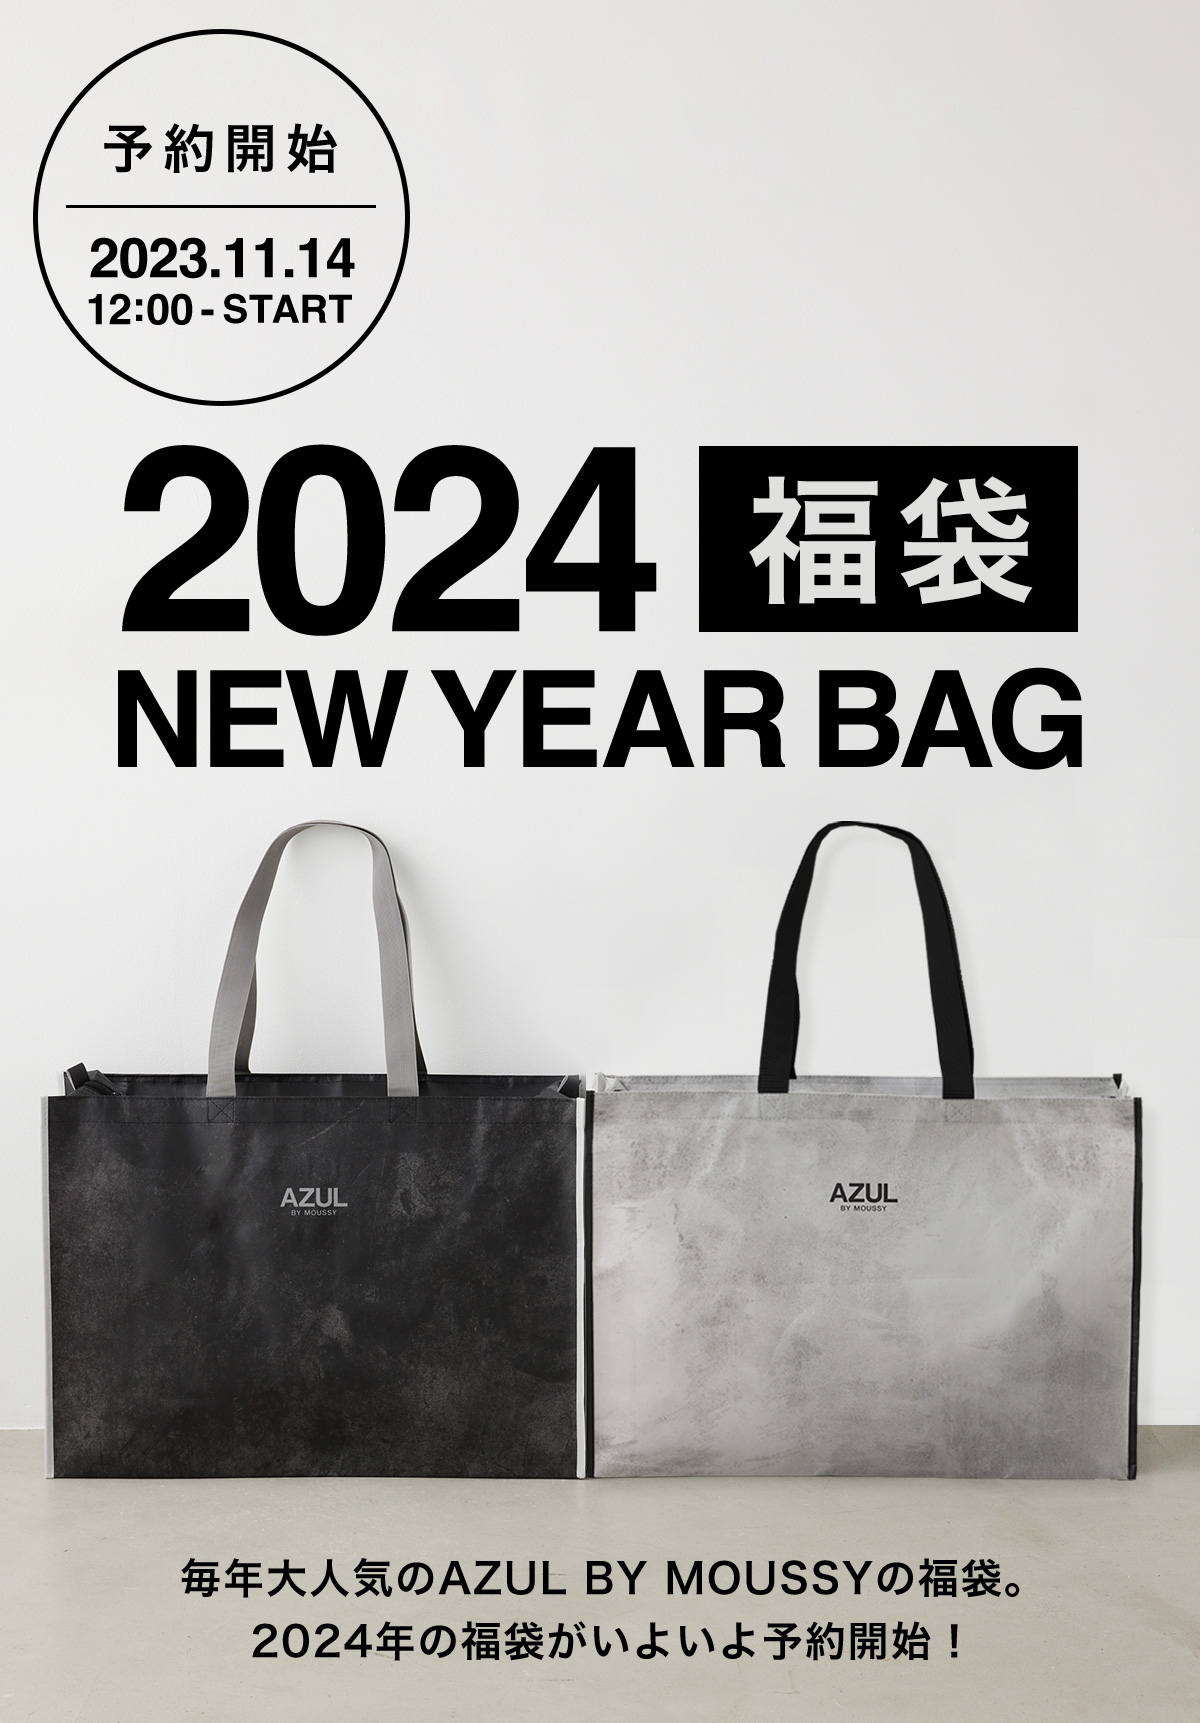 2024 福袋 NEW YEAR BAG｜特集コンテンツ｜AZUL BY MOUSSY